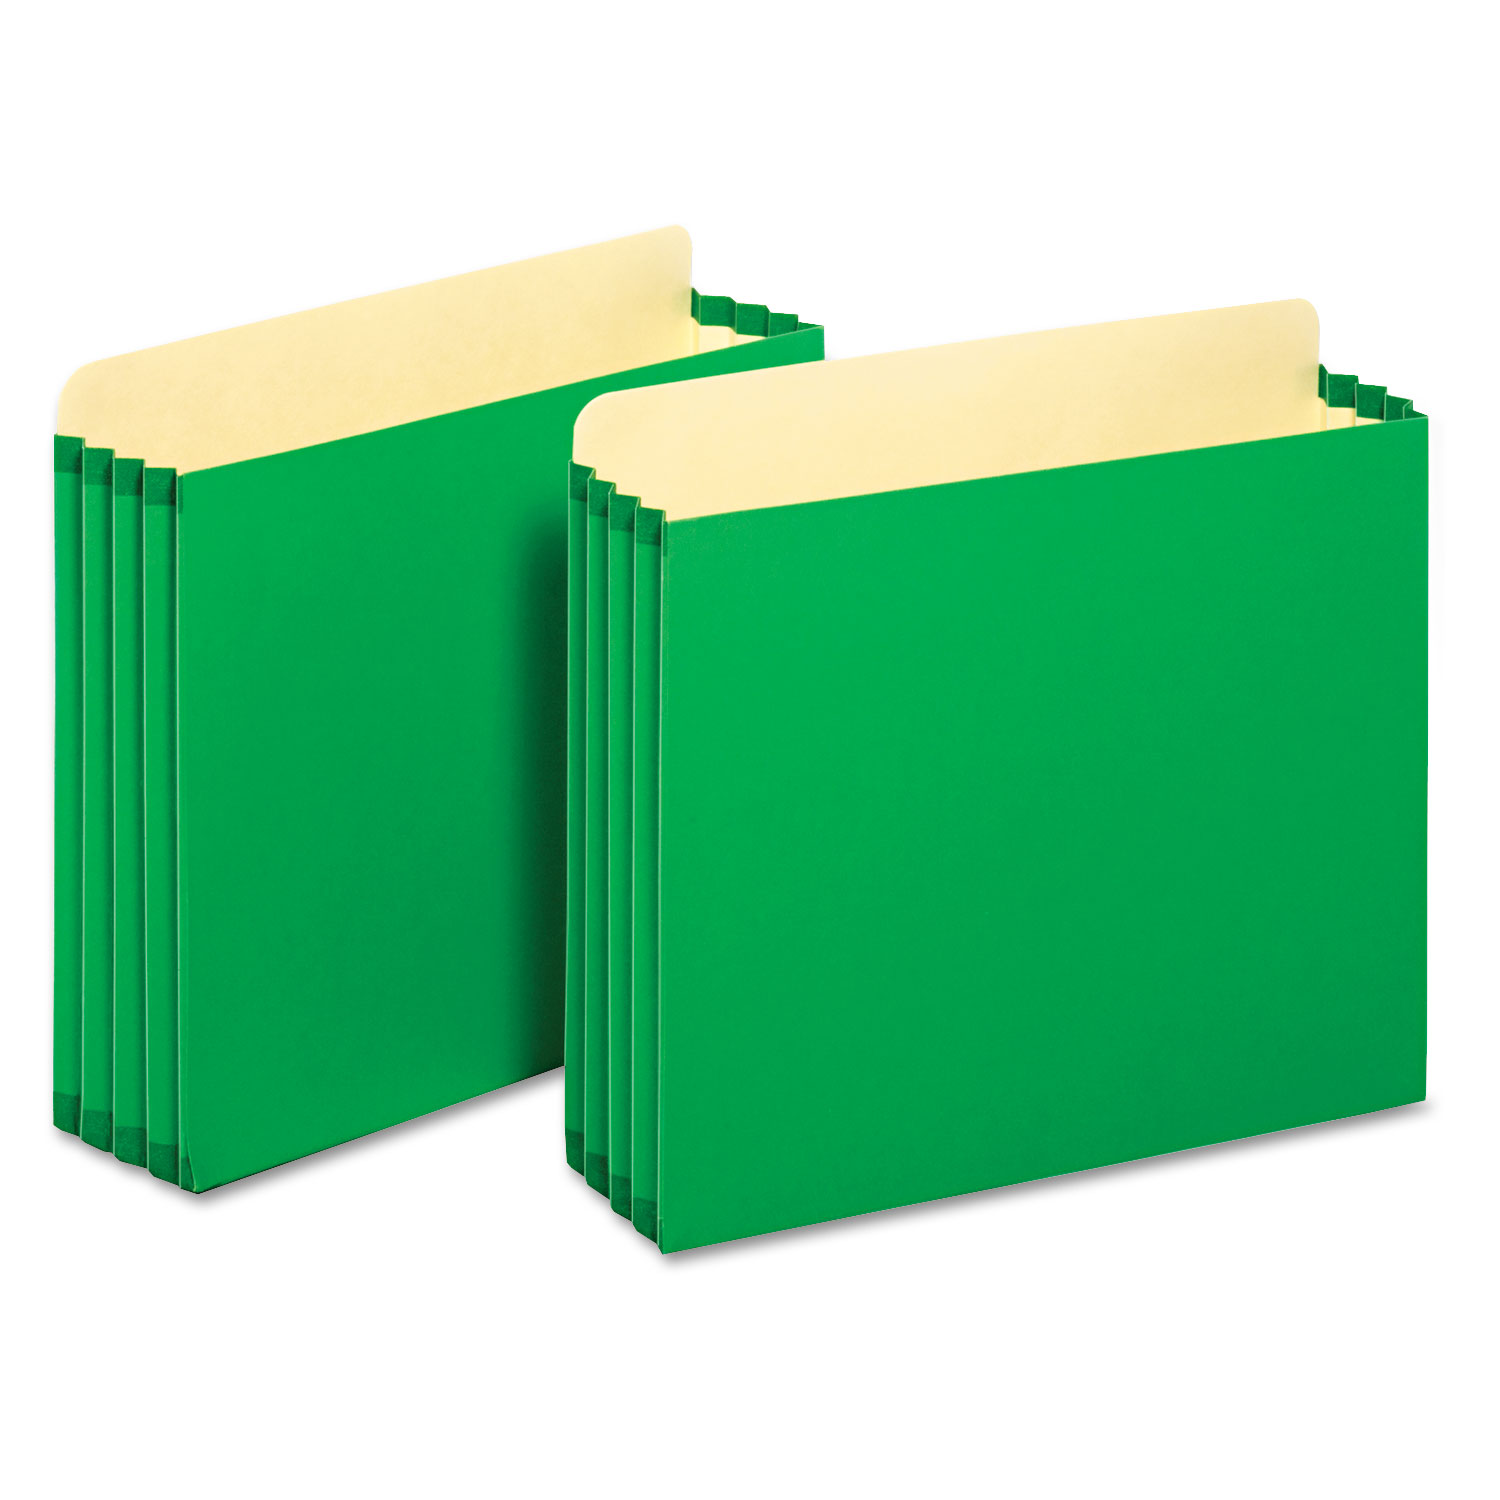 File Cabinet Pockets, 3.5